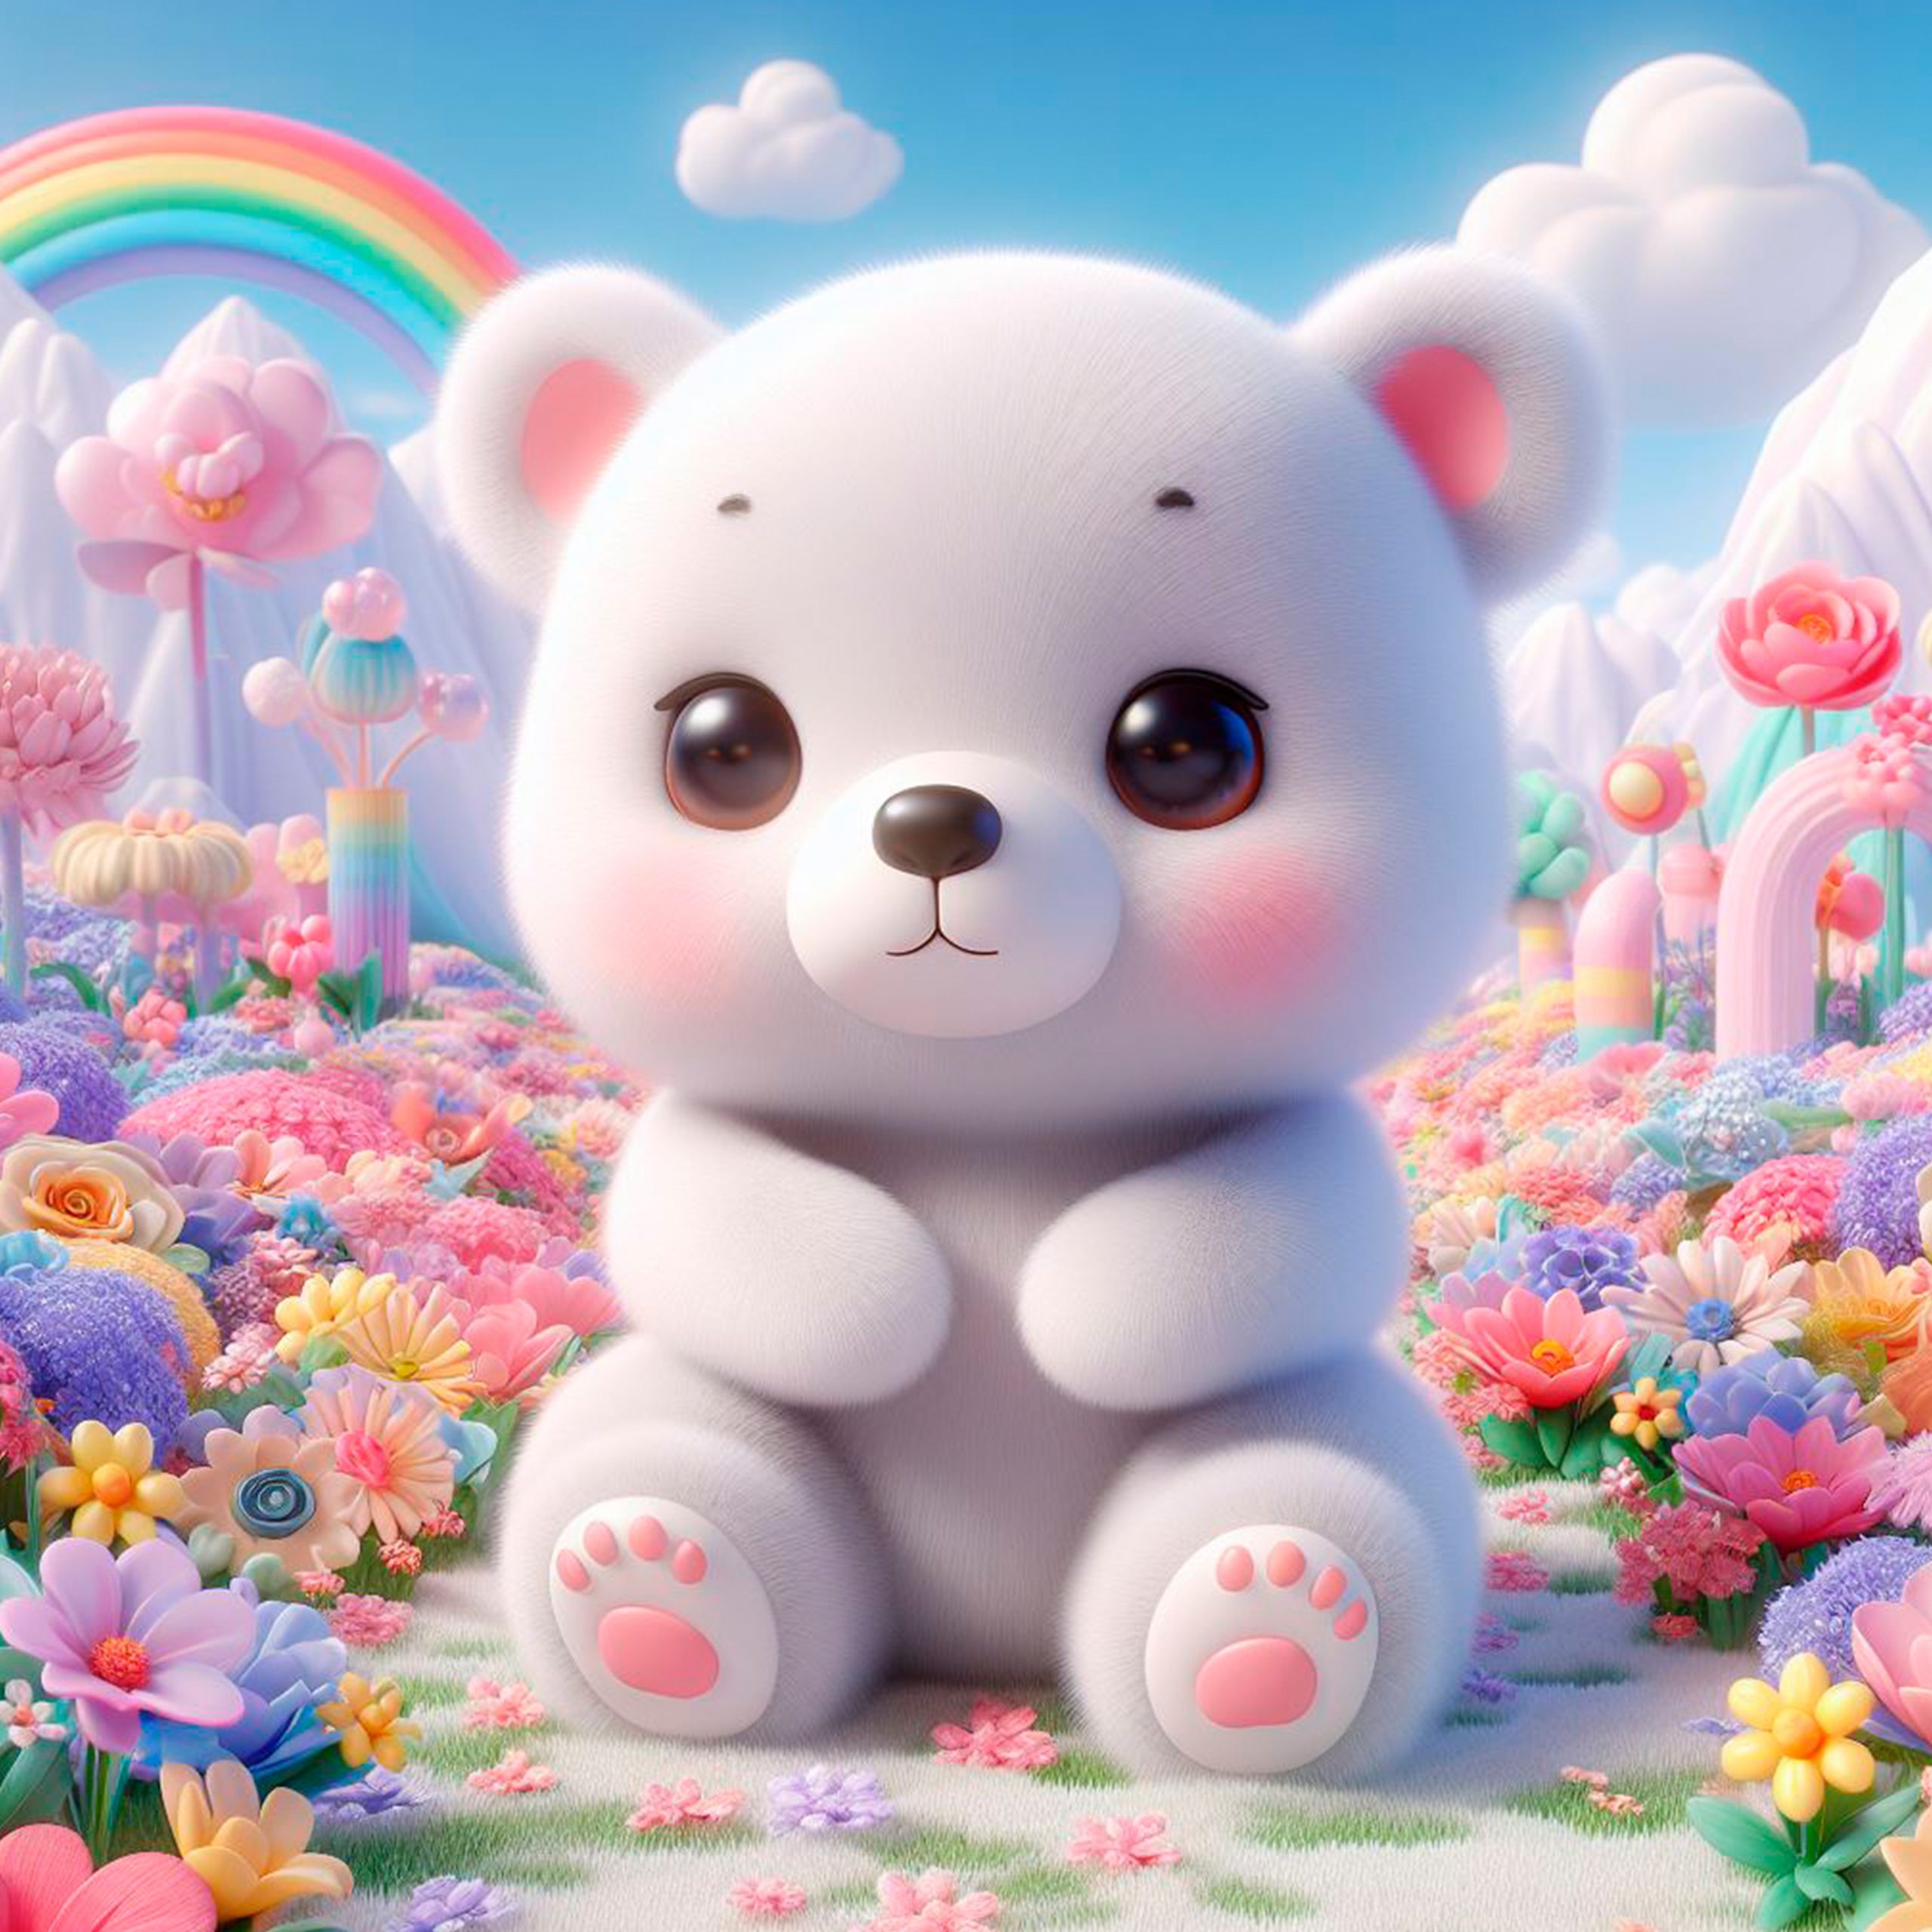 Pequeño oso bebé blanco de mejillas rosadas, sentado bajo el cielo azul y un arcoiris